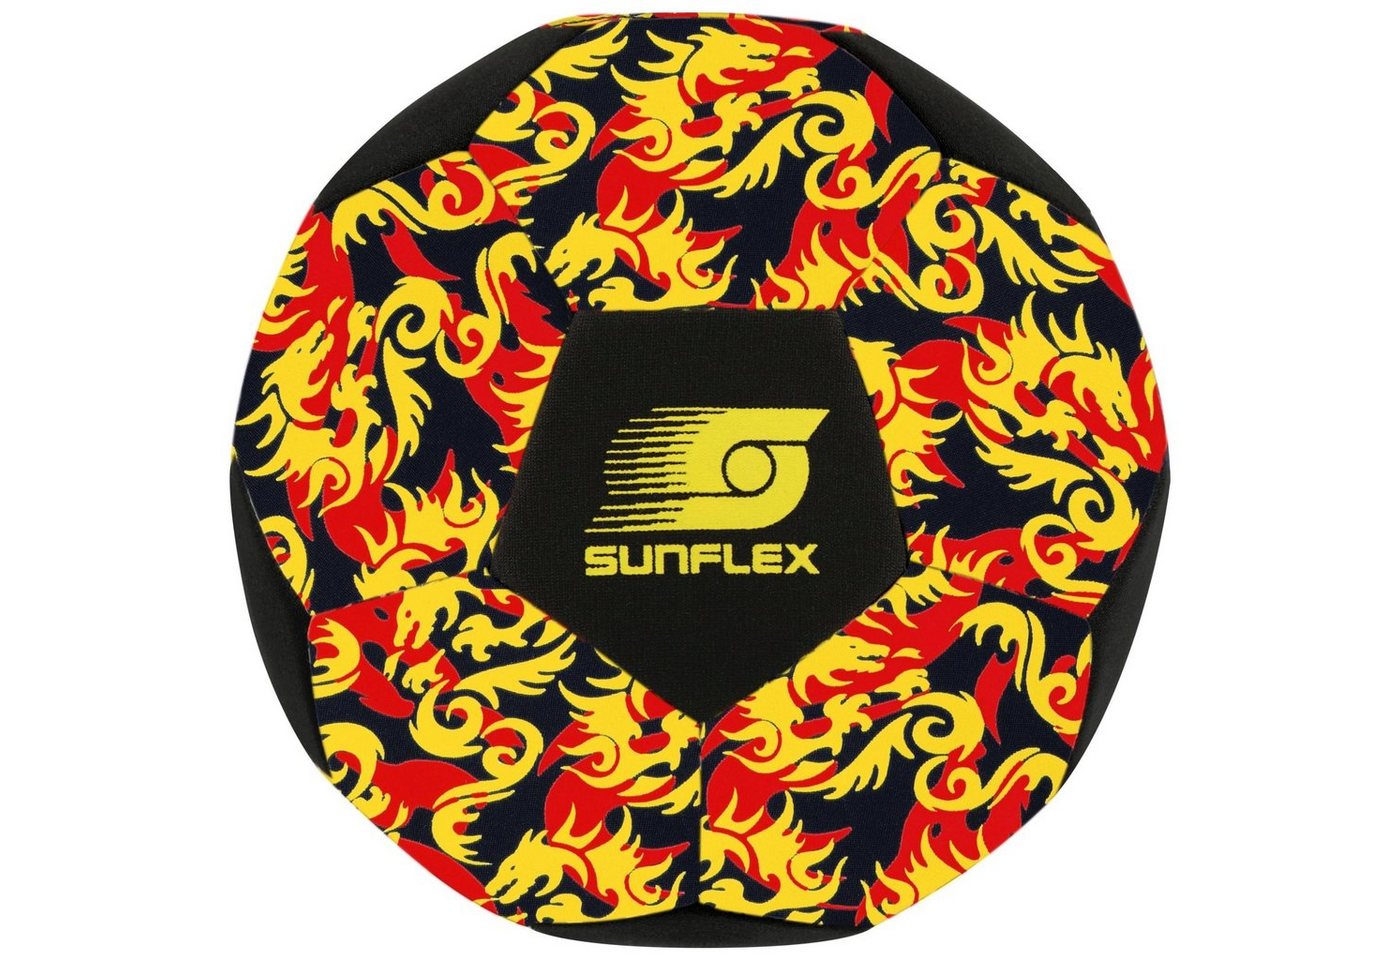 Sunflex Fußball sunflex Fußball Glow Flames von Sunflex